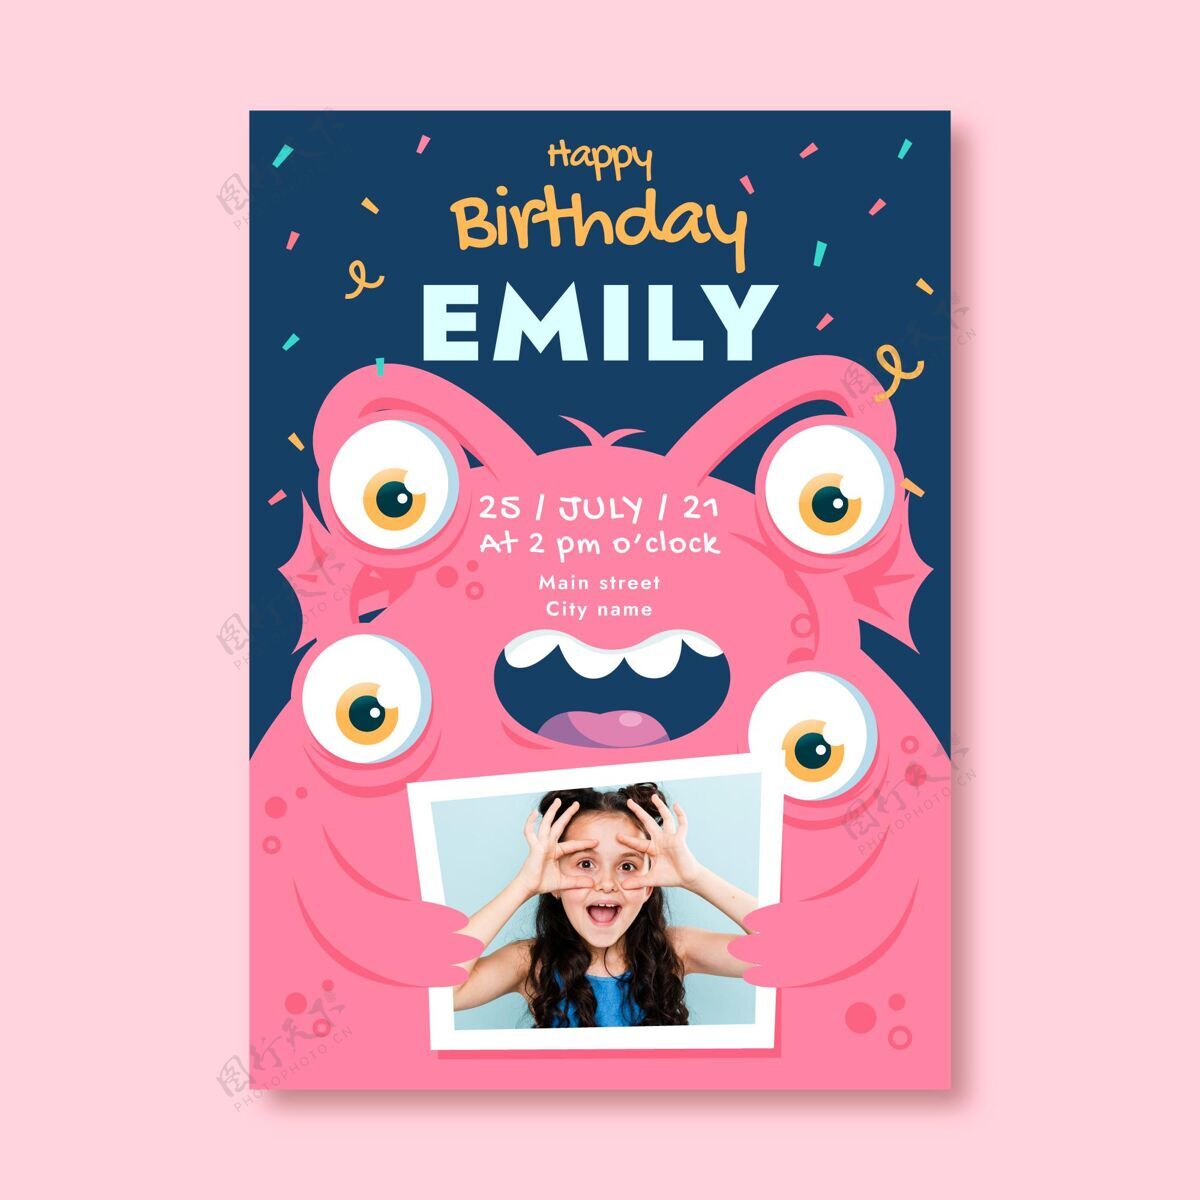 平面设计怪物生日邀请与照片模板准备打印小孩生日派对请柬模板